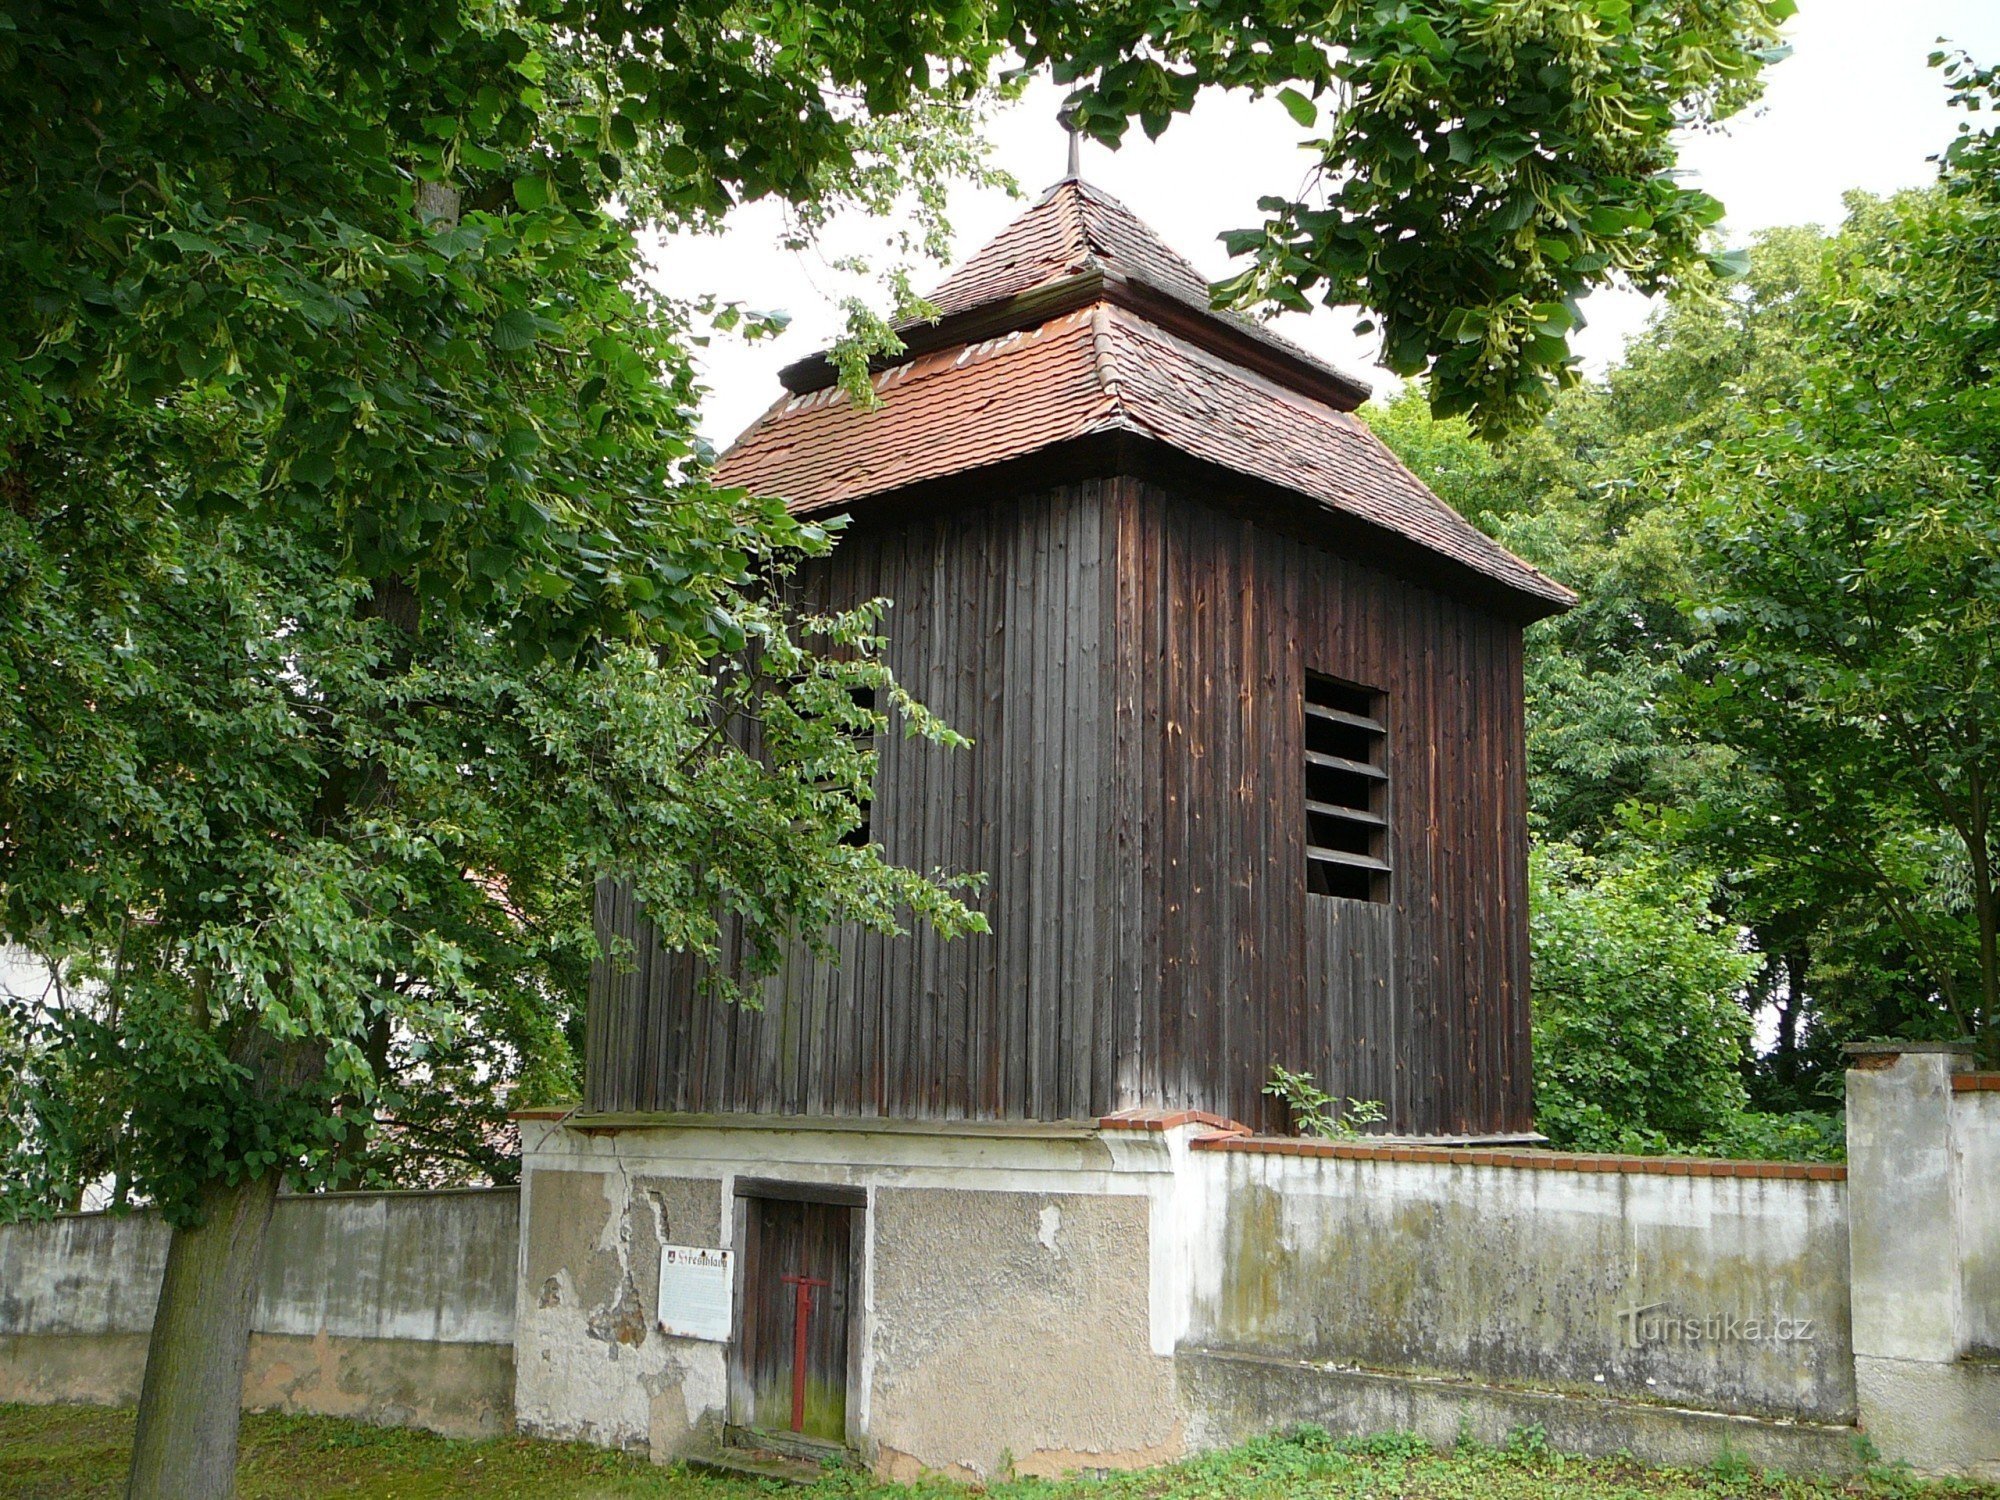 Zvonice hřešihlavského kostela